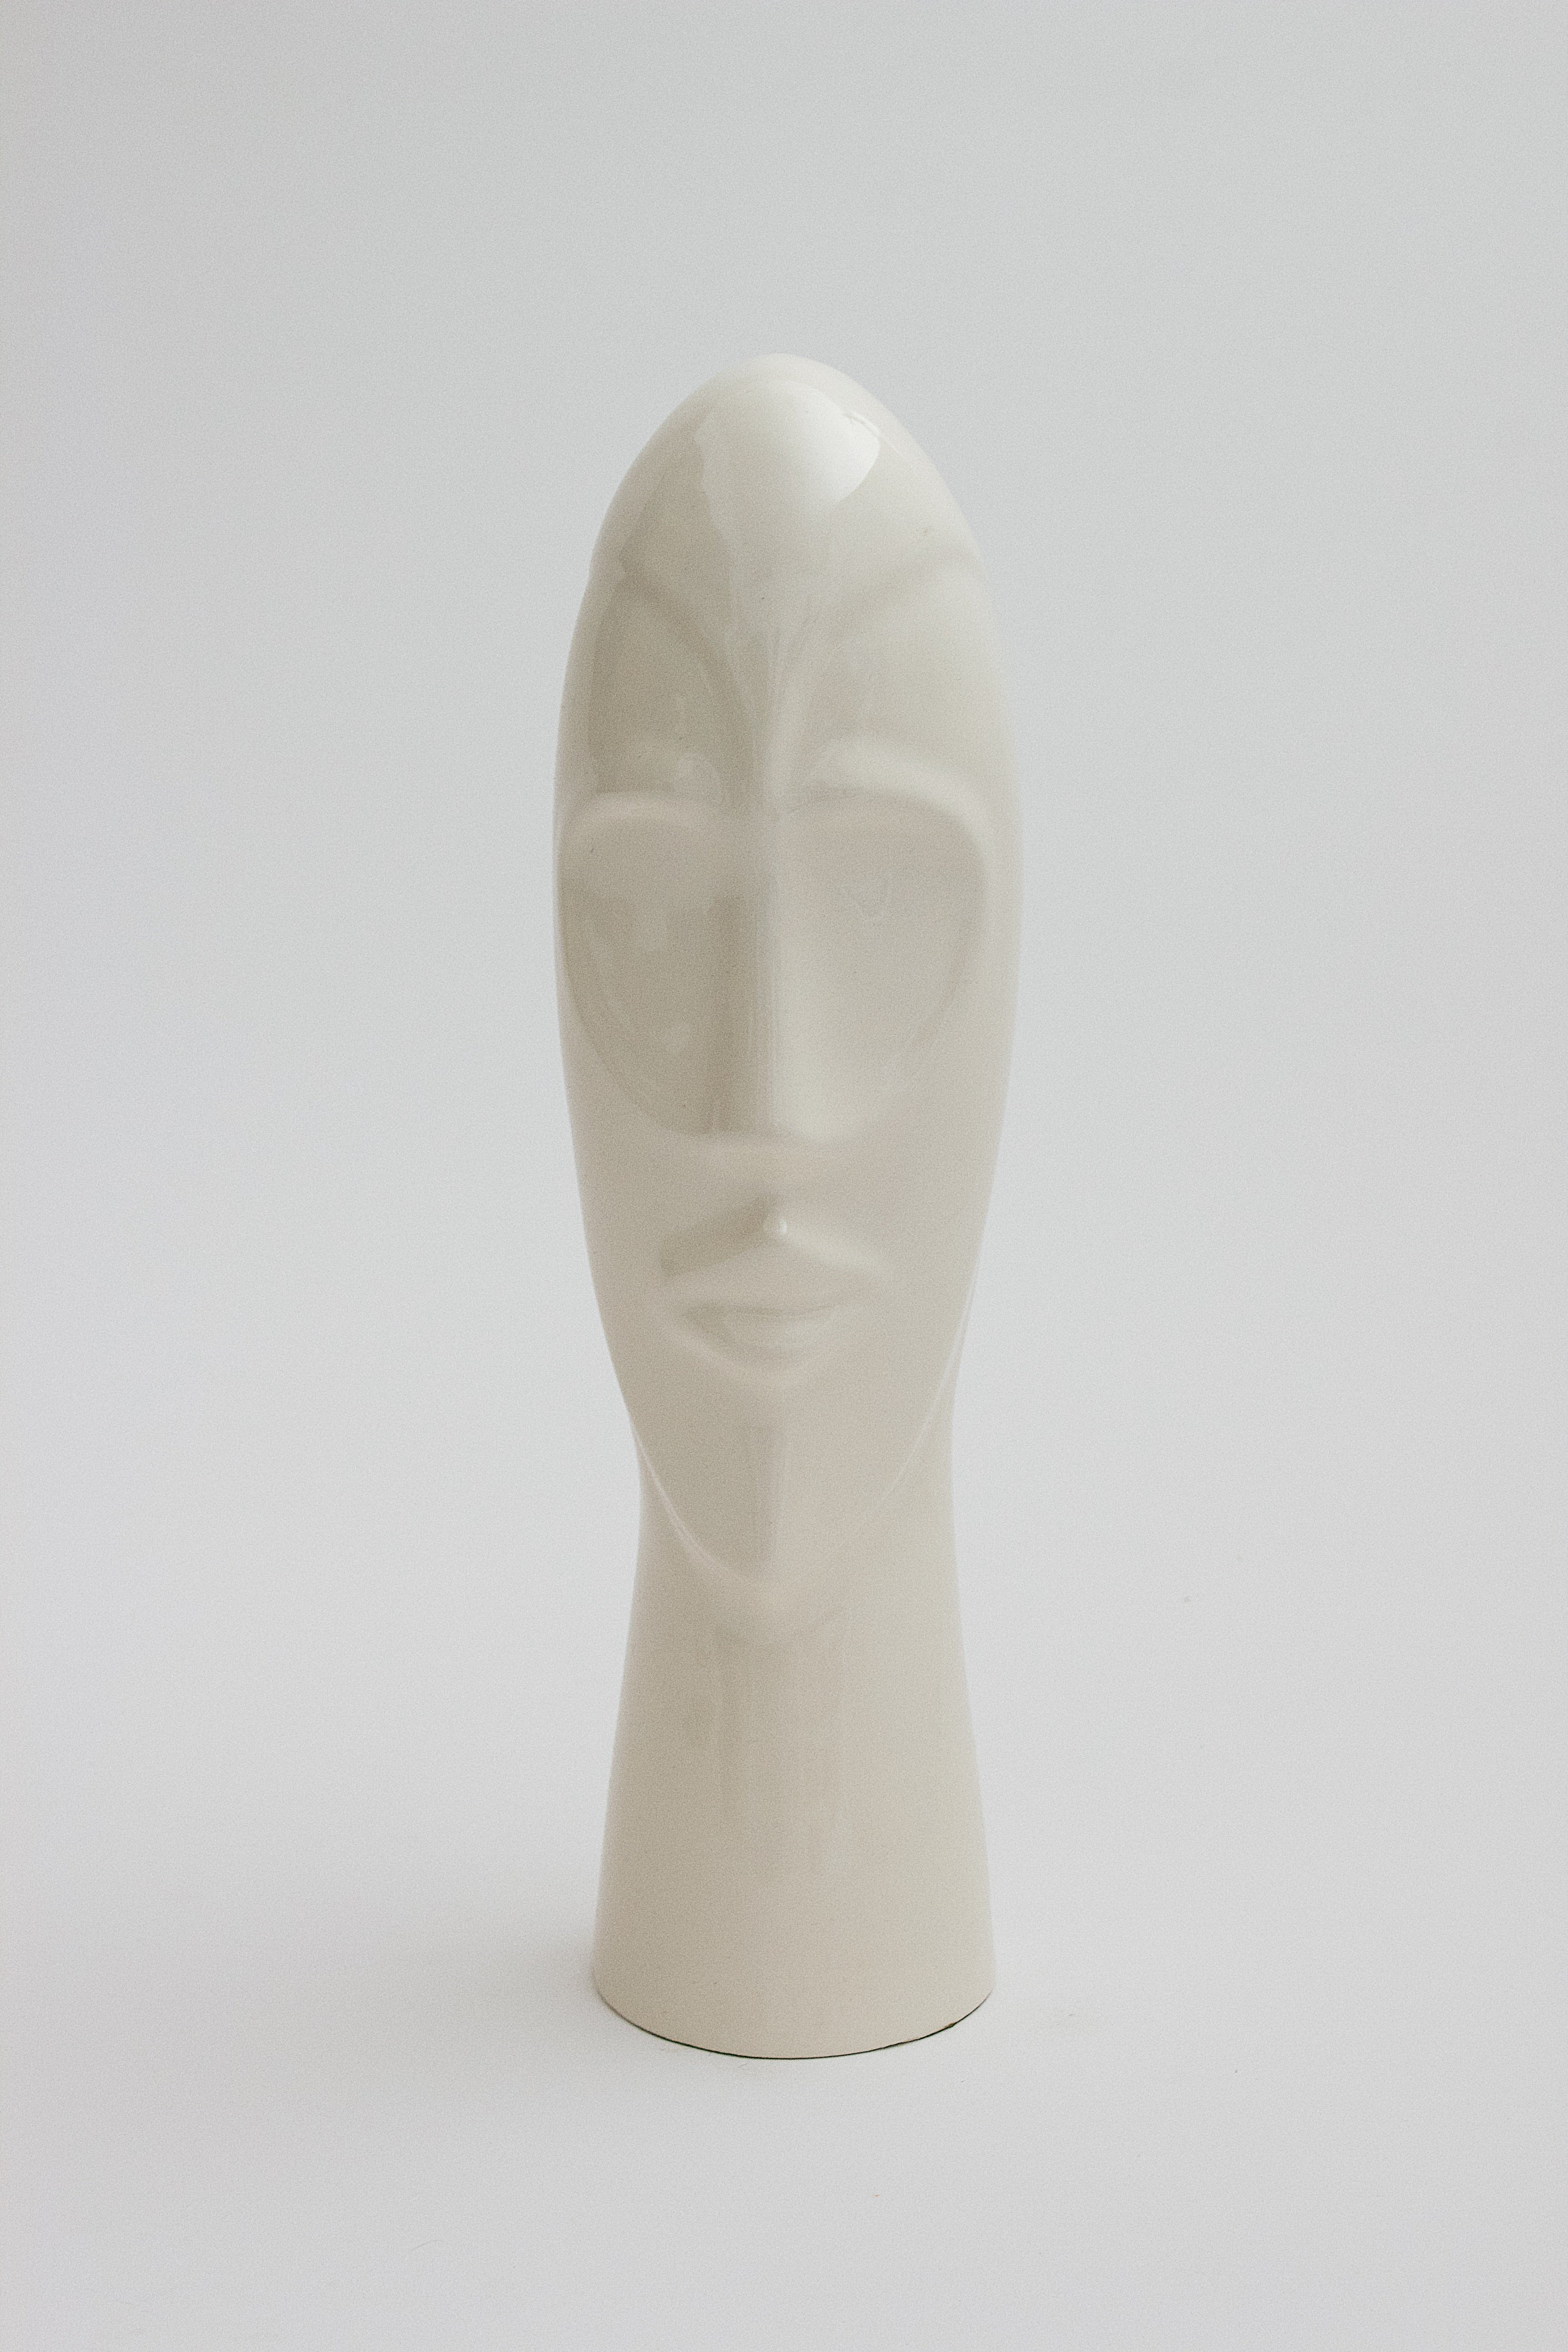 Modiglianiesque Head Art Sculpture by K. Wingard